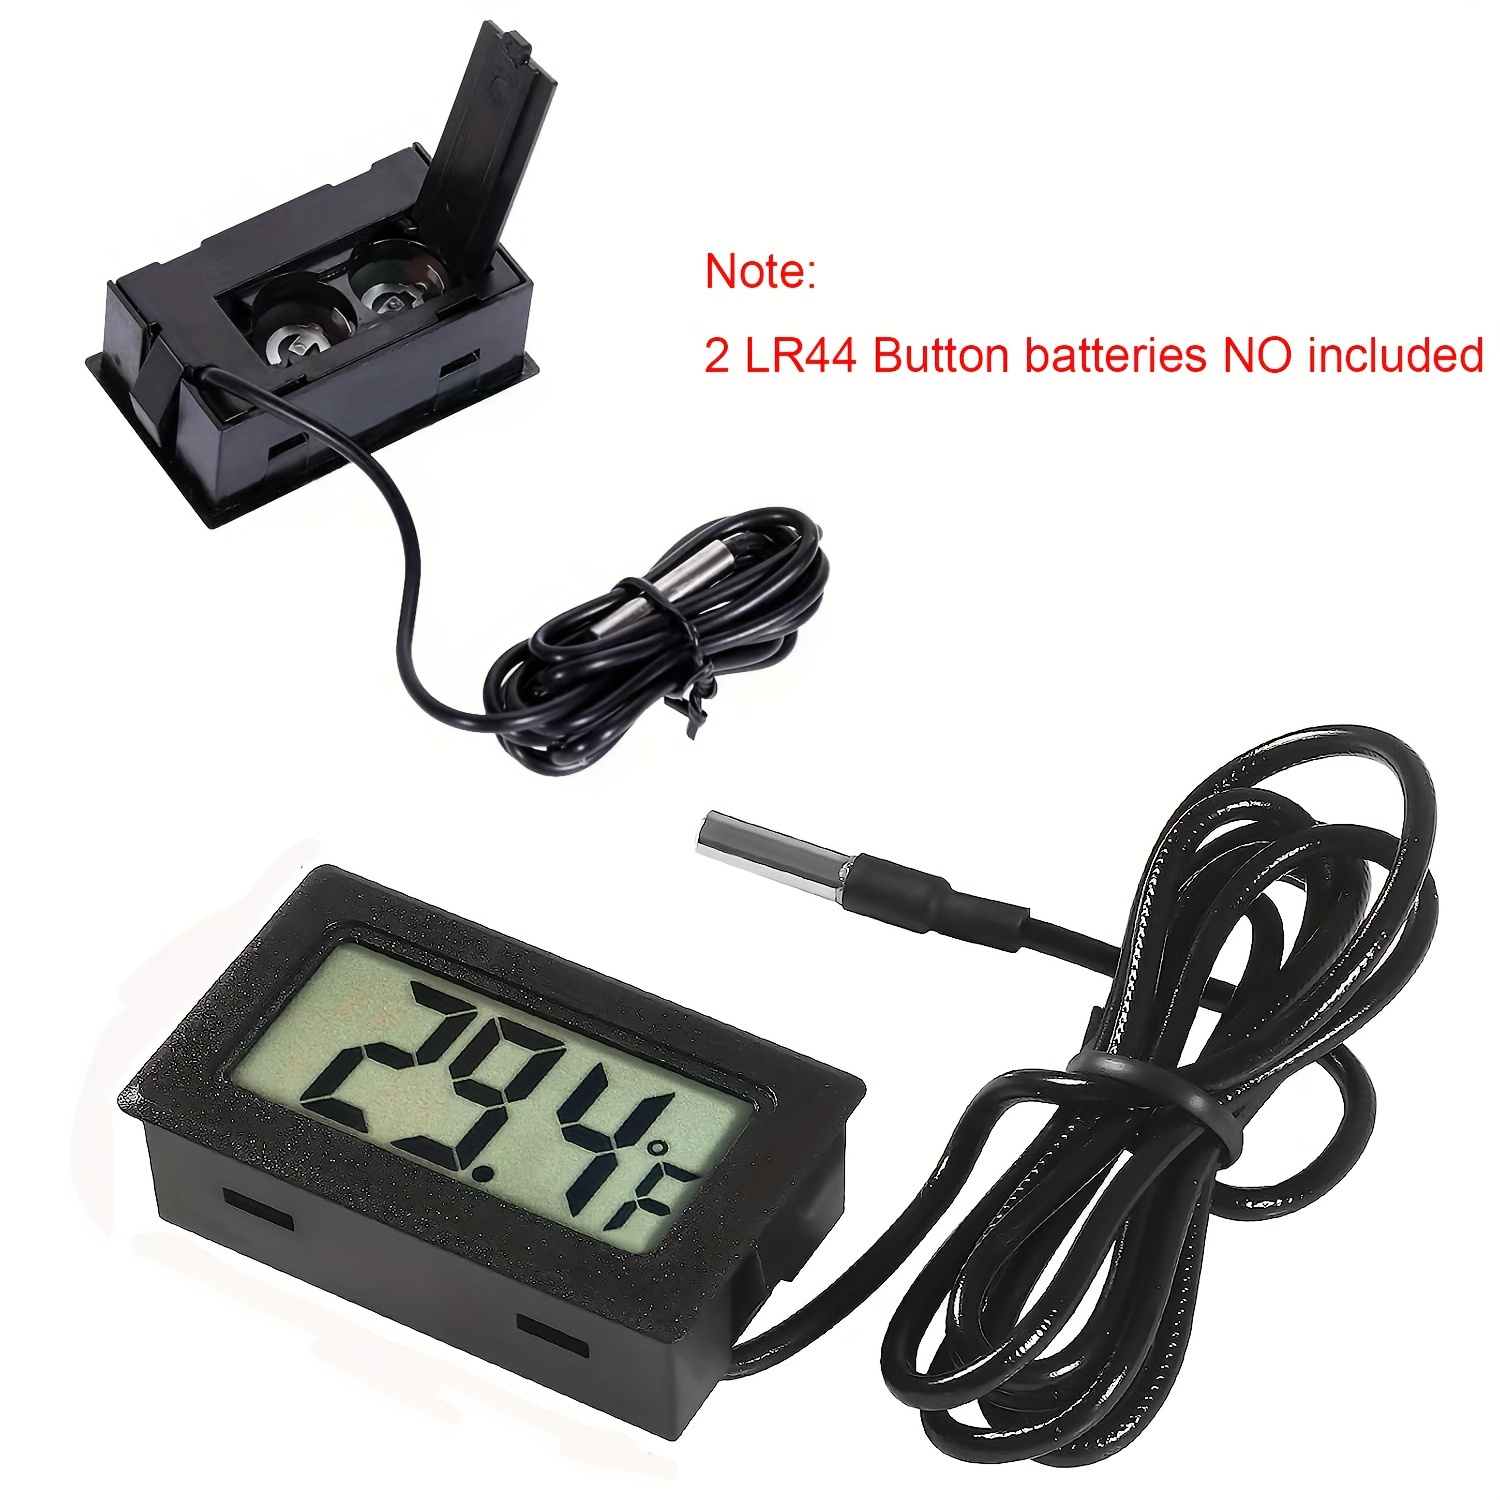 Thermomètre hygromètre numérique LCD avec rétroéclairage pour reptile,  vivarium, serre, chambre de bébé, incubateur (noir)